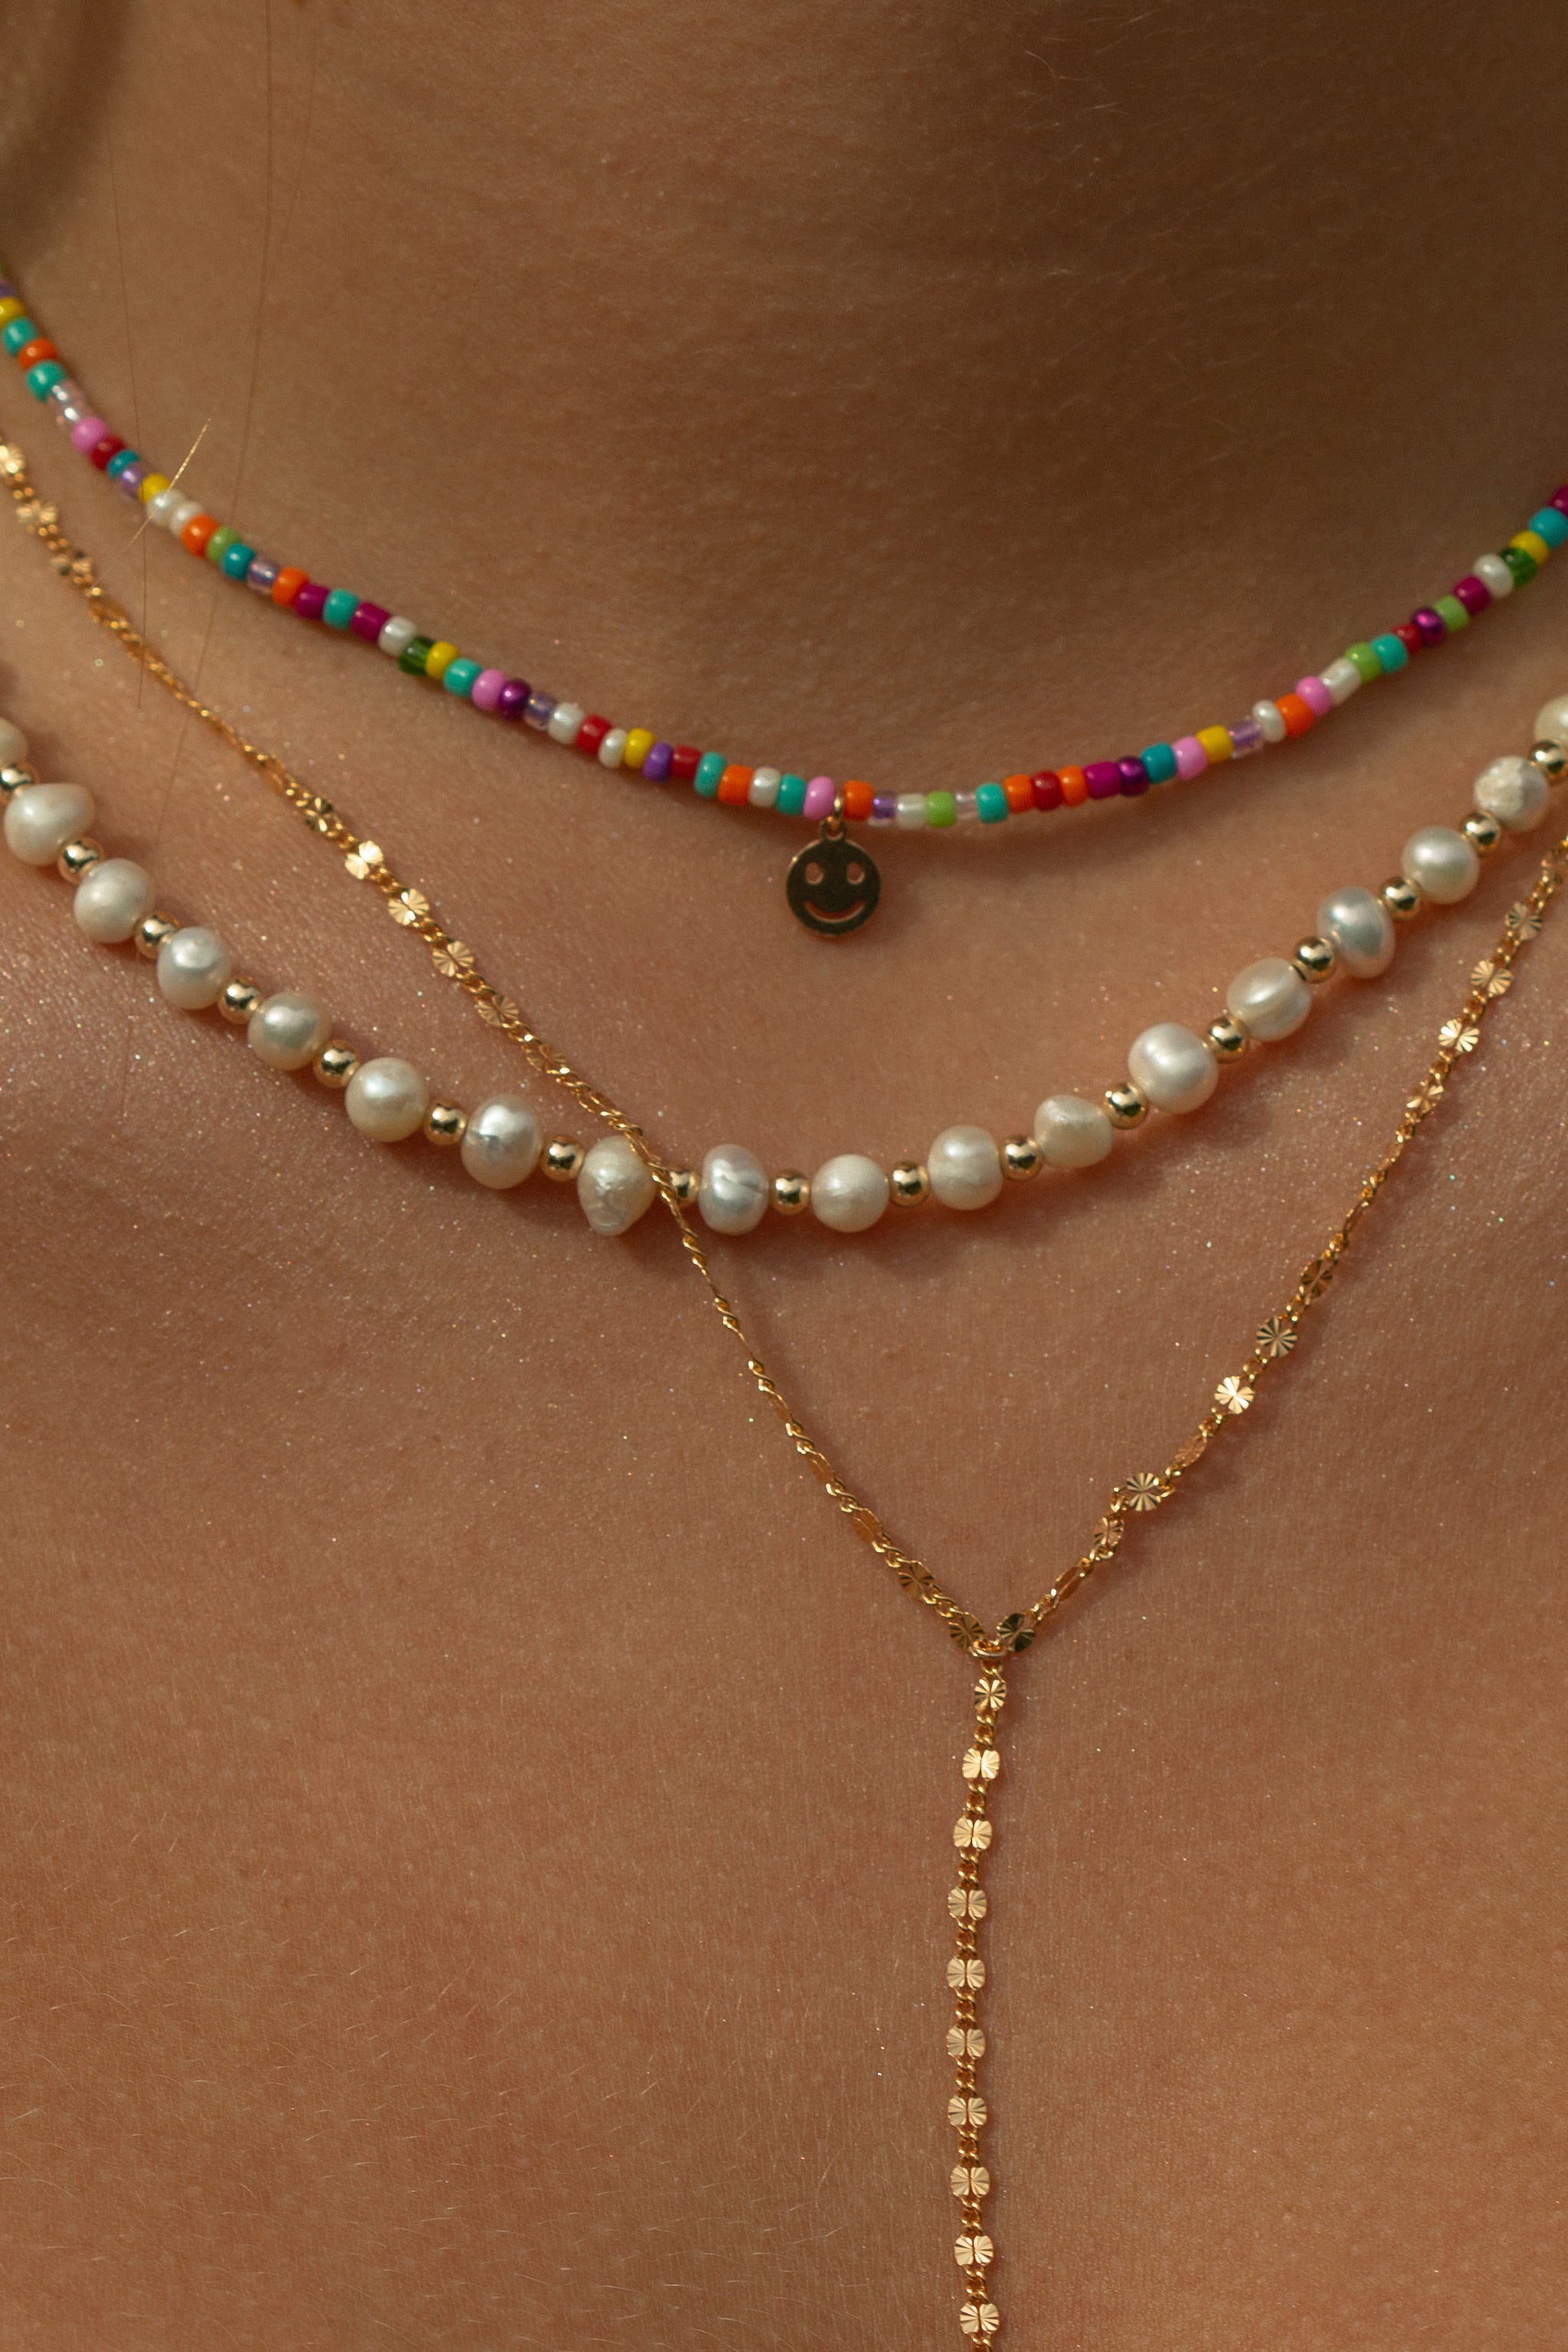 Ciara necklace